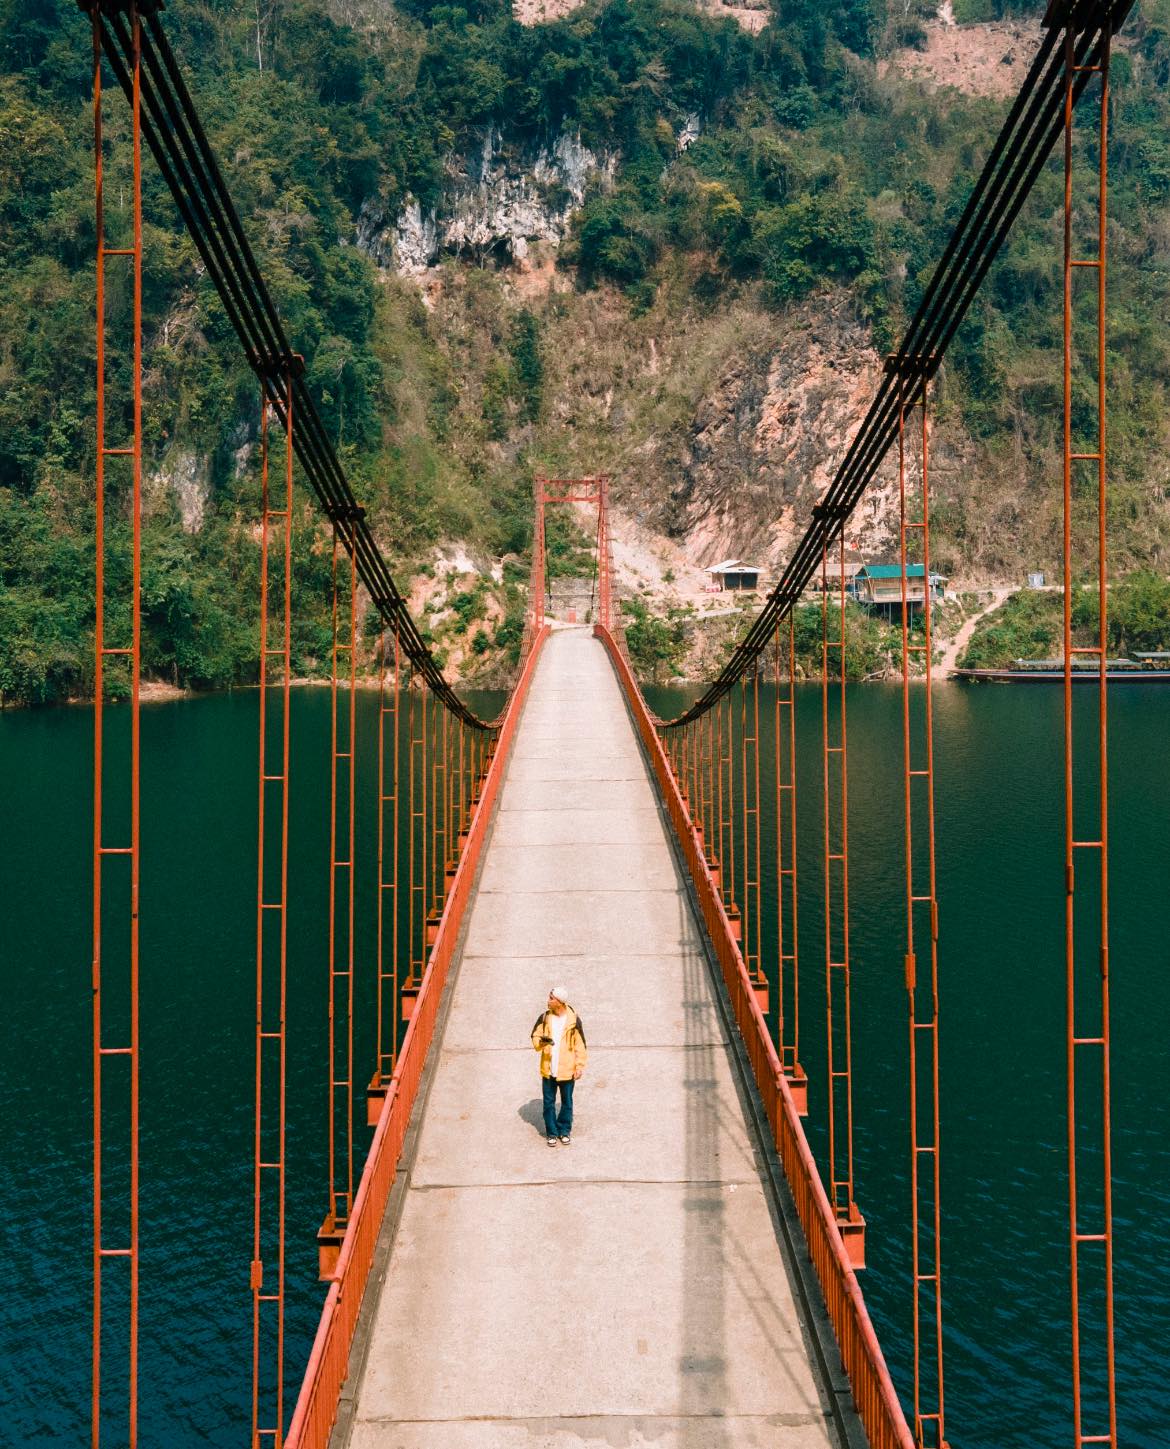 Phát hiện cây cầu treo đẹp như tranh vẽ giữa núi rừng Điện Biên, nhiều người không ngờ đây là khung cảnh tại Việt Nam- Ảnh 8.